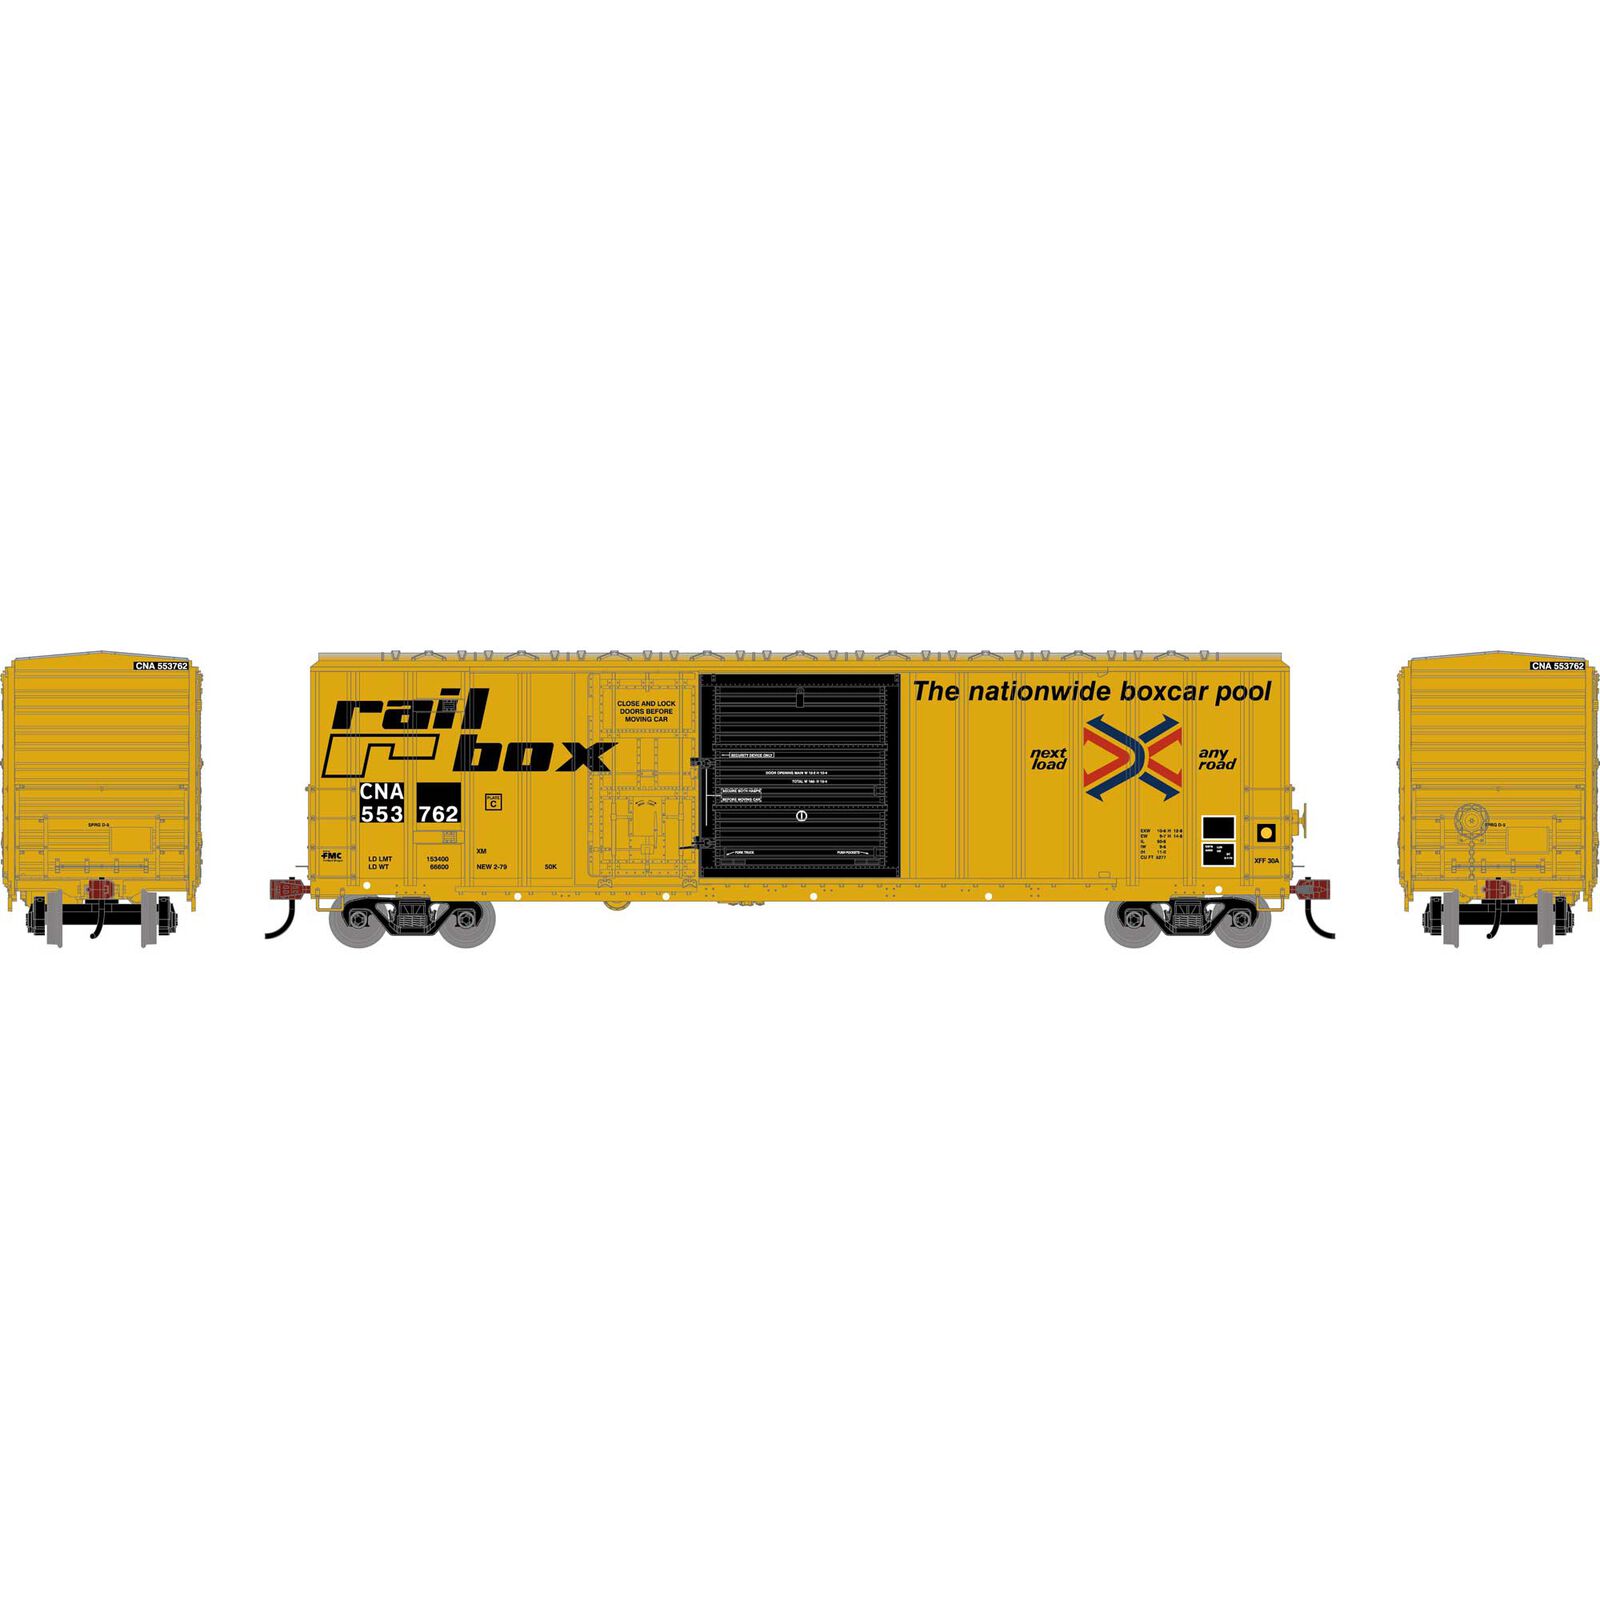 HO 50' FMC 5277 Combo Door Box Car, CNA 'Ex-Railbox' #553762